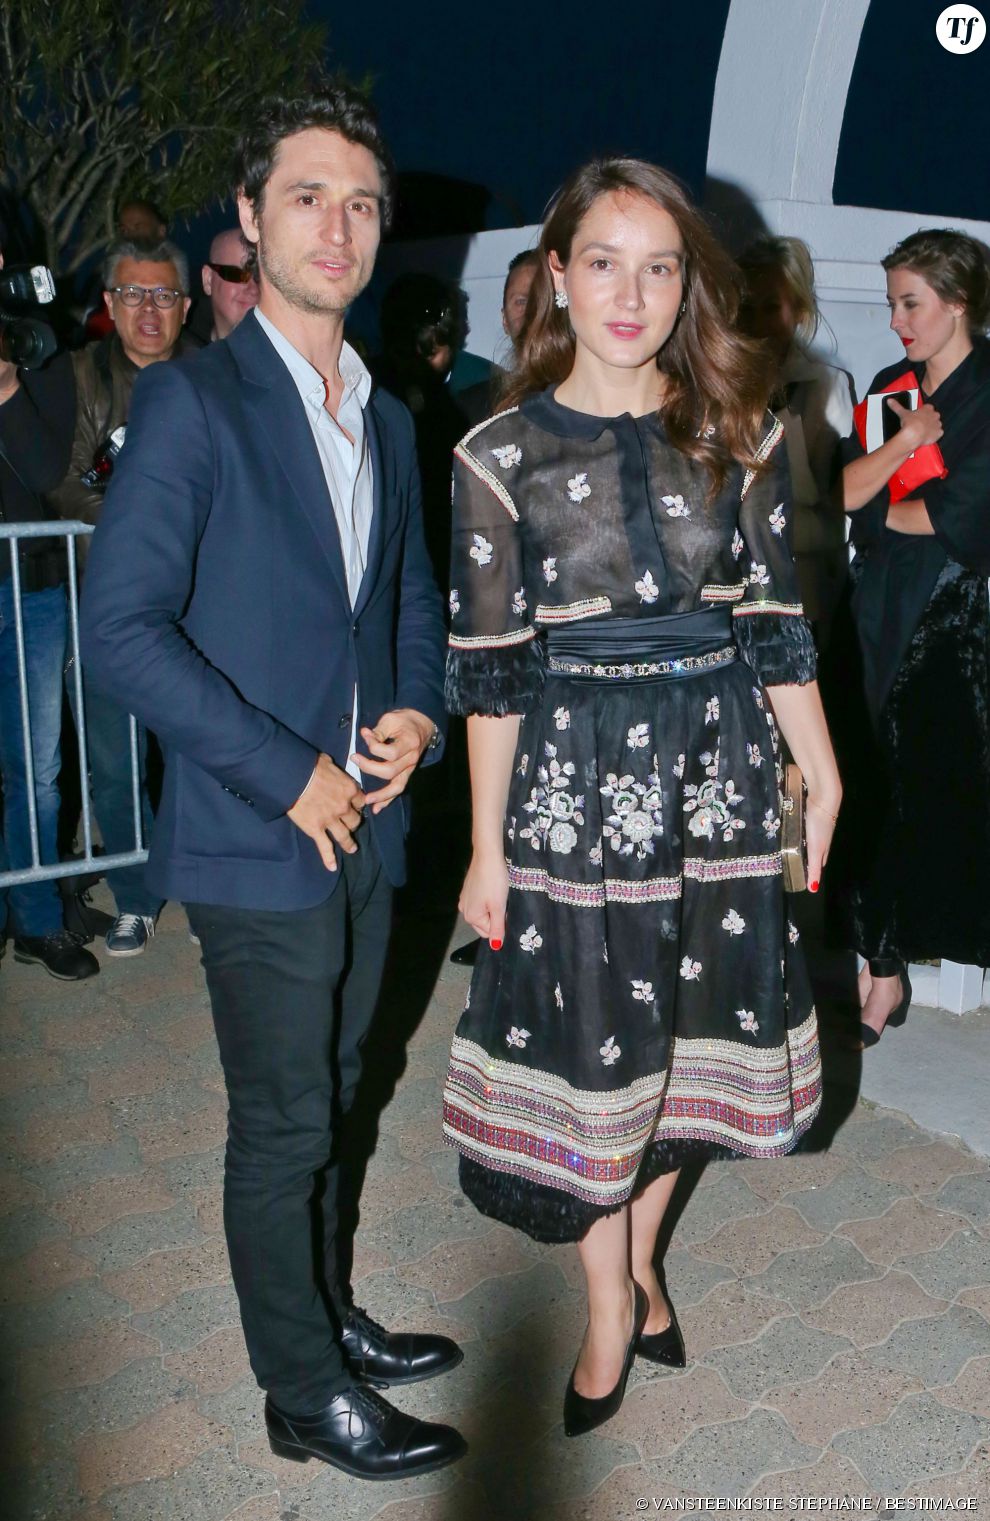  Jérémie Elkaïm et Anaïs Demoustier à la soirée Chanel Vanity Fair pendant le festival de Cannes. Le 20 mai 2015. 